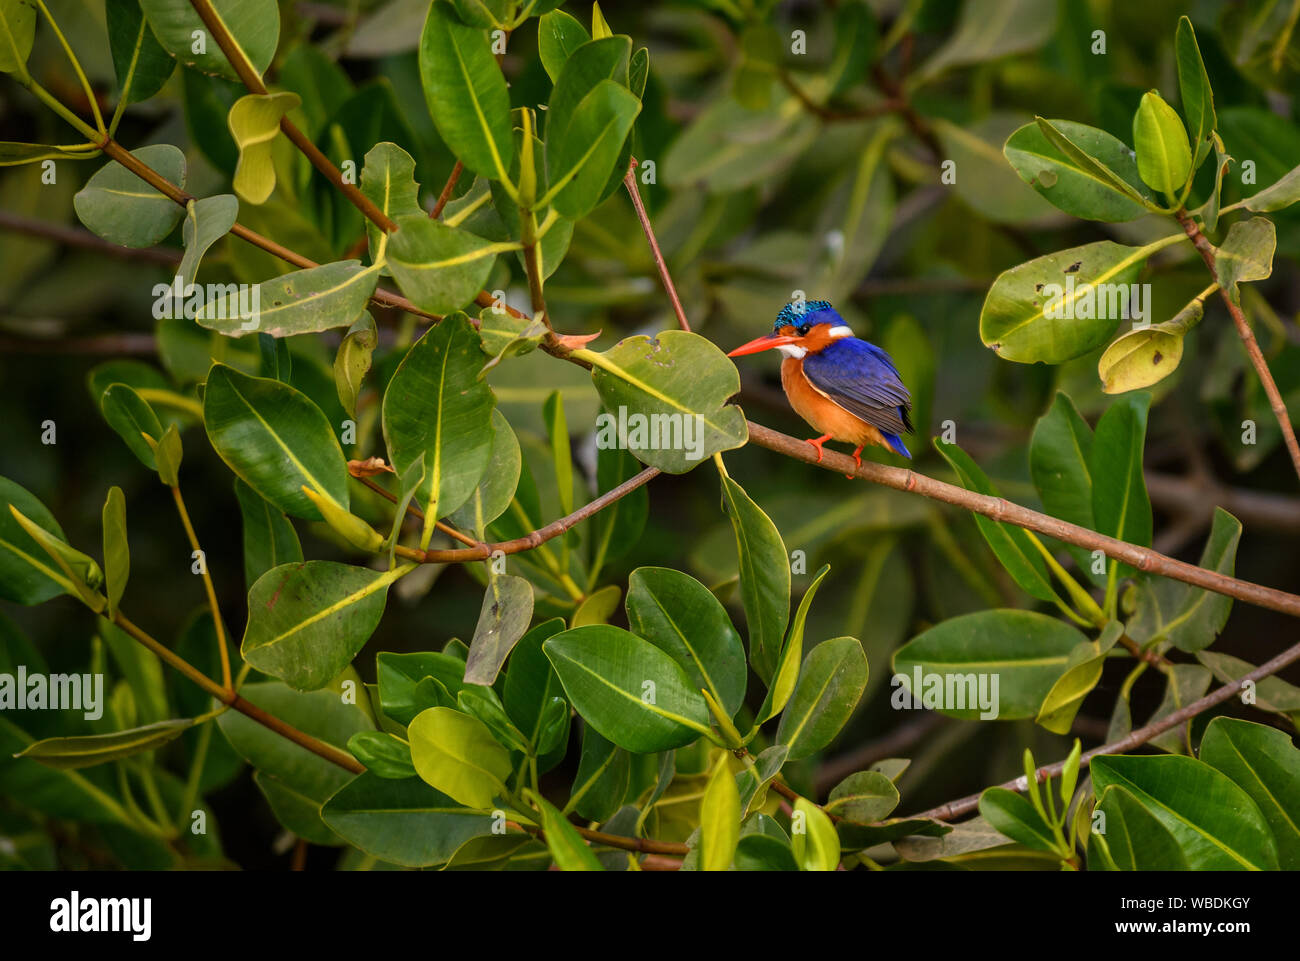 Malachit Eisvogel - Alcedo cristata, schöne kleine blaue und orange river Kingfisher aus westlichen Afrikanischen Flüssen und Mangroven, La Somone, Senegal. Stockfoto